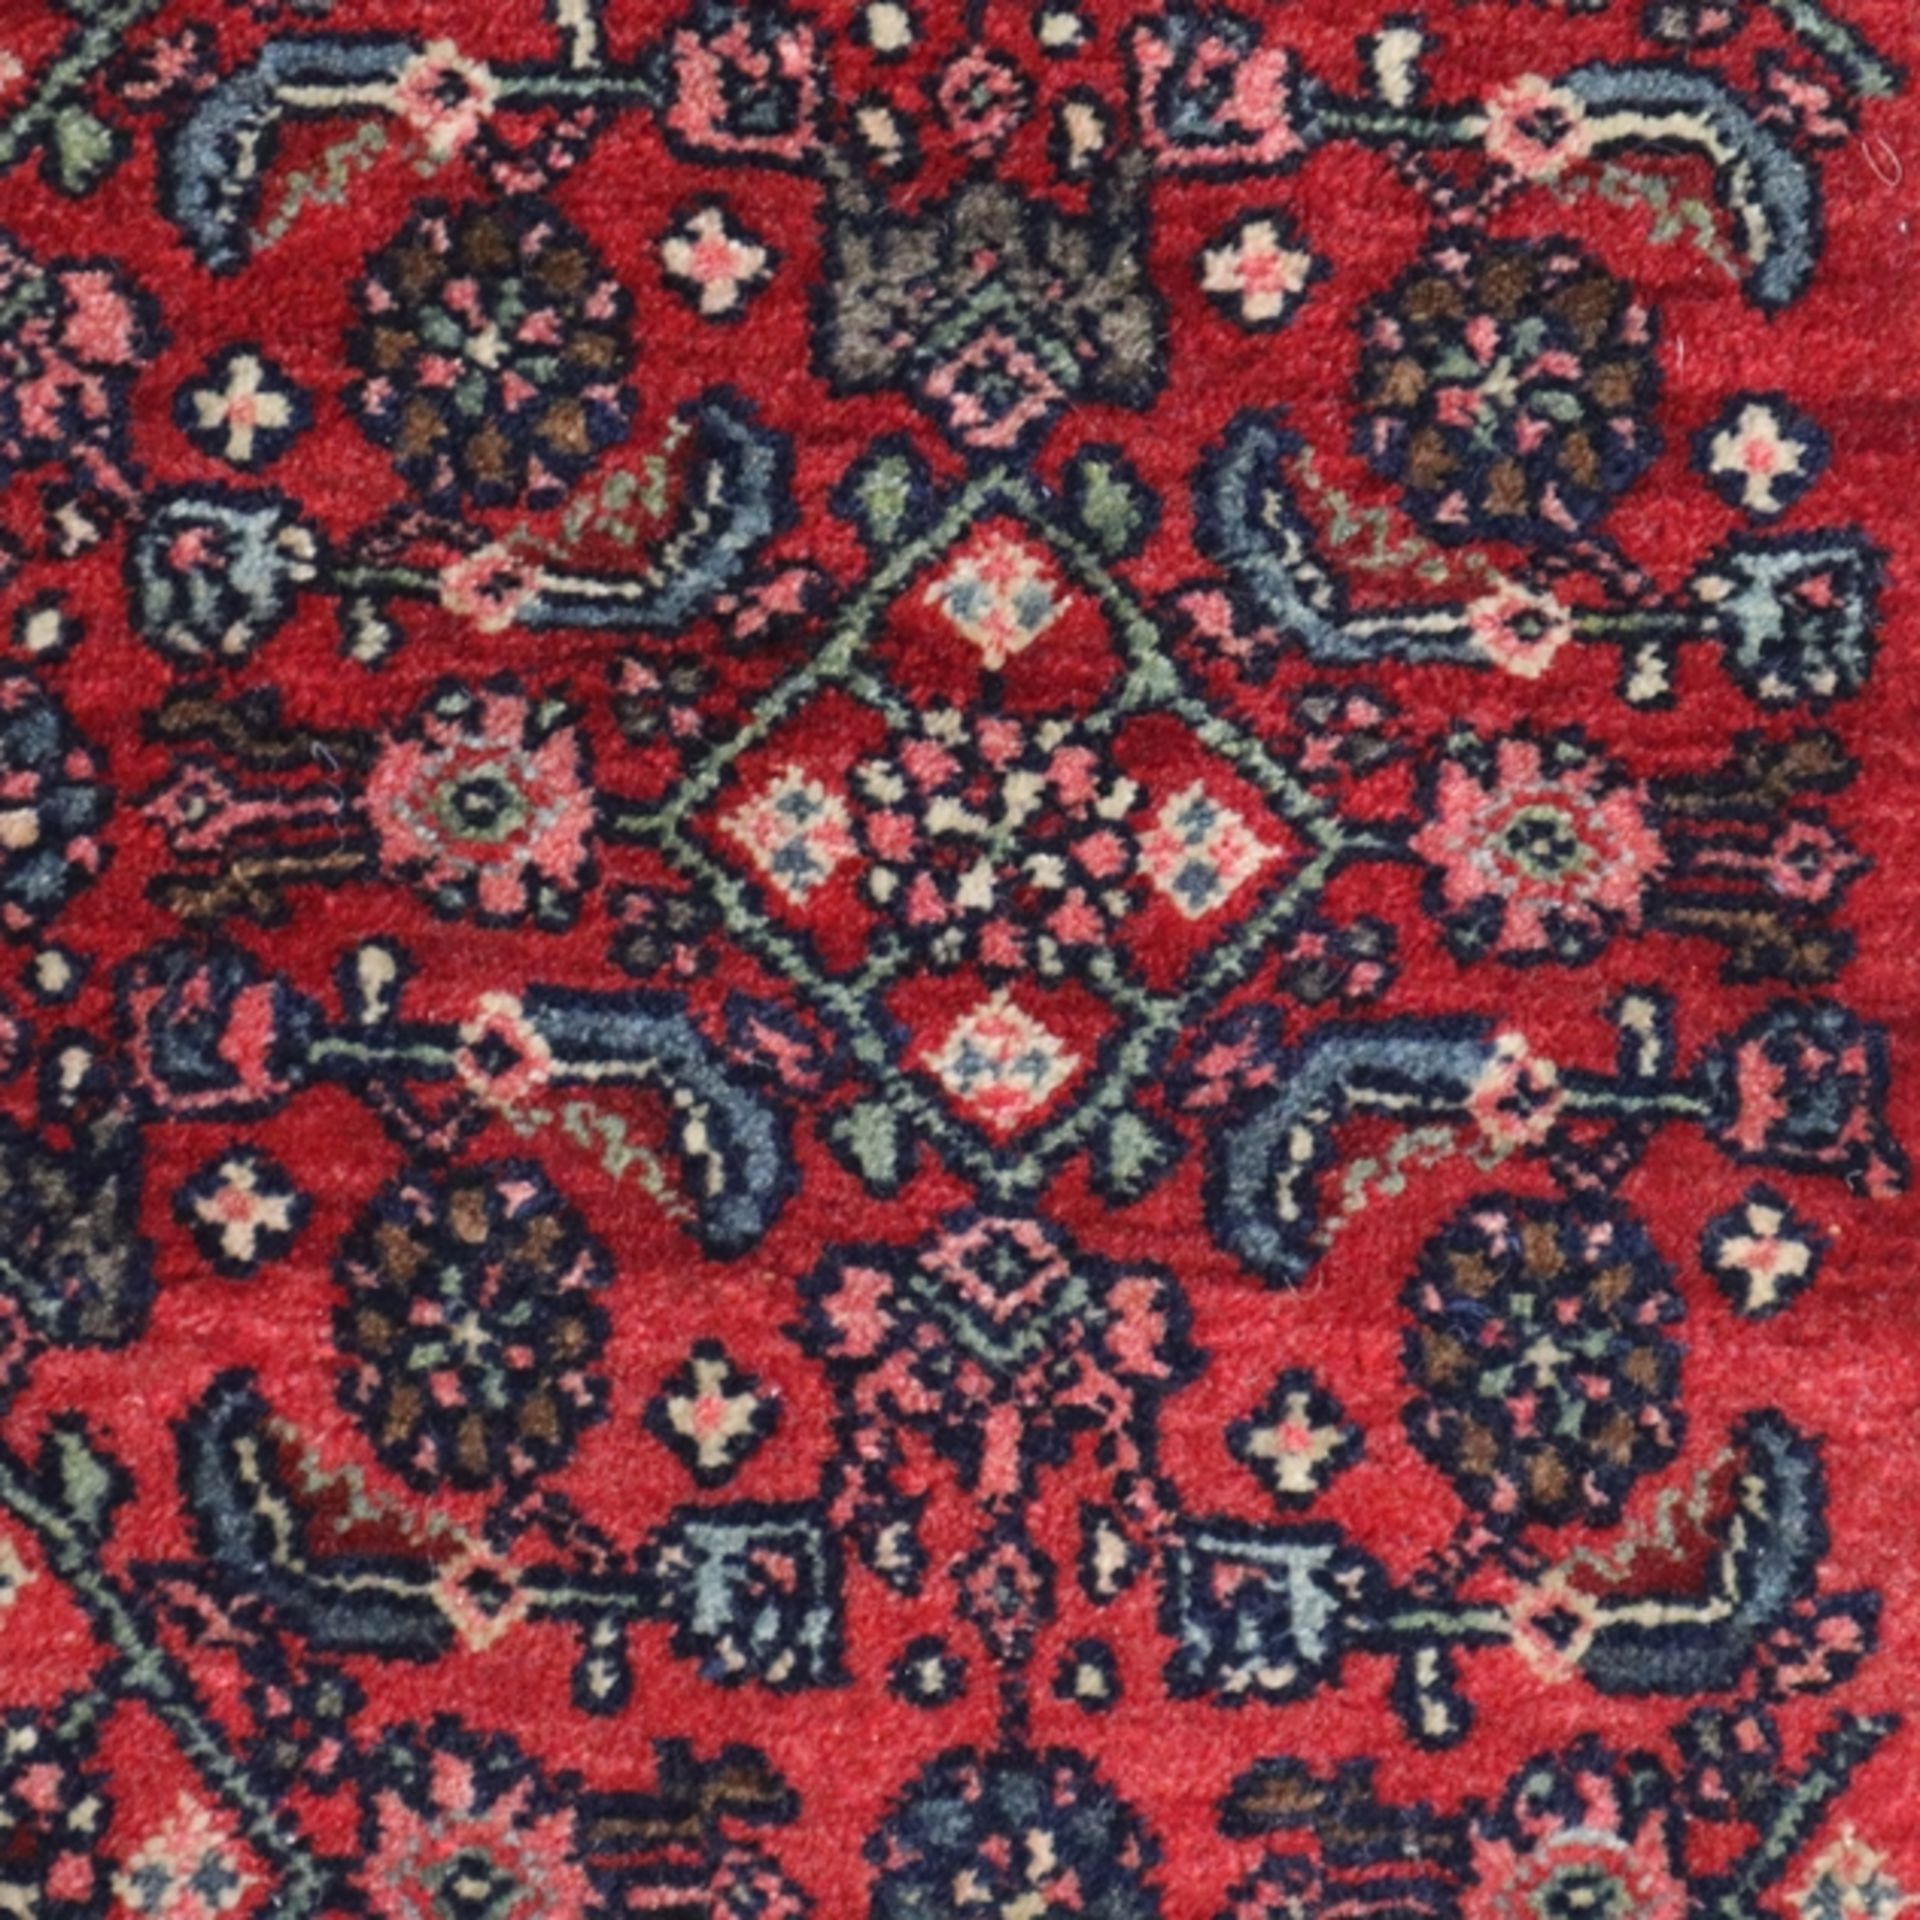 Bidjar - Persien, ca. 80 Jahre alt, Schurwolle, handgeknüpft, Knotenzahl ca. 360000 pro qm, rotgrun - Bild 4 aus 7